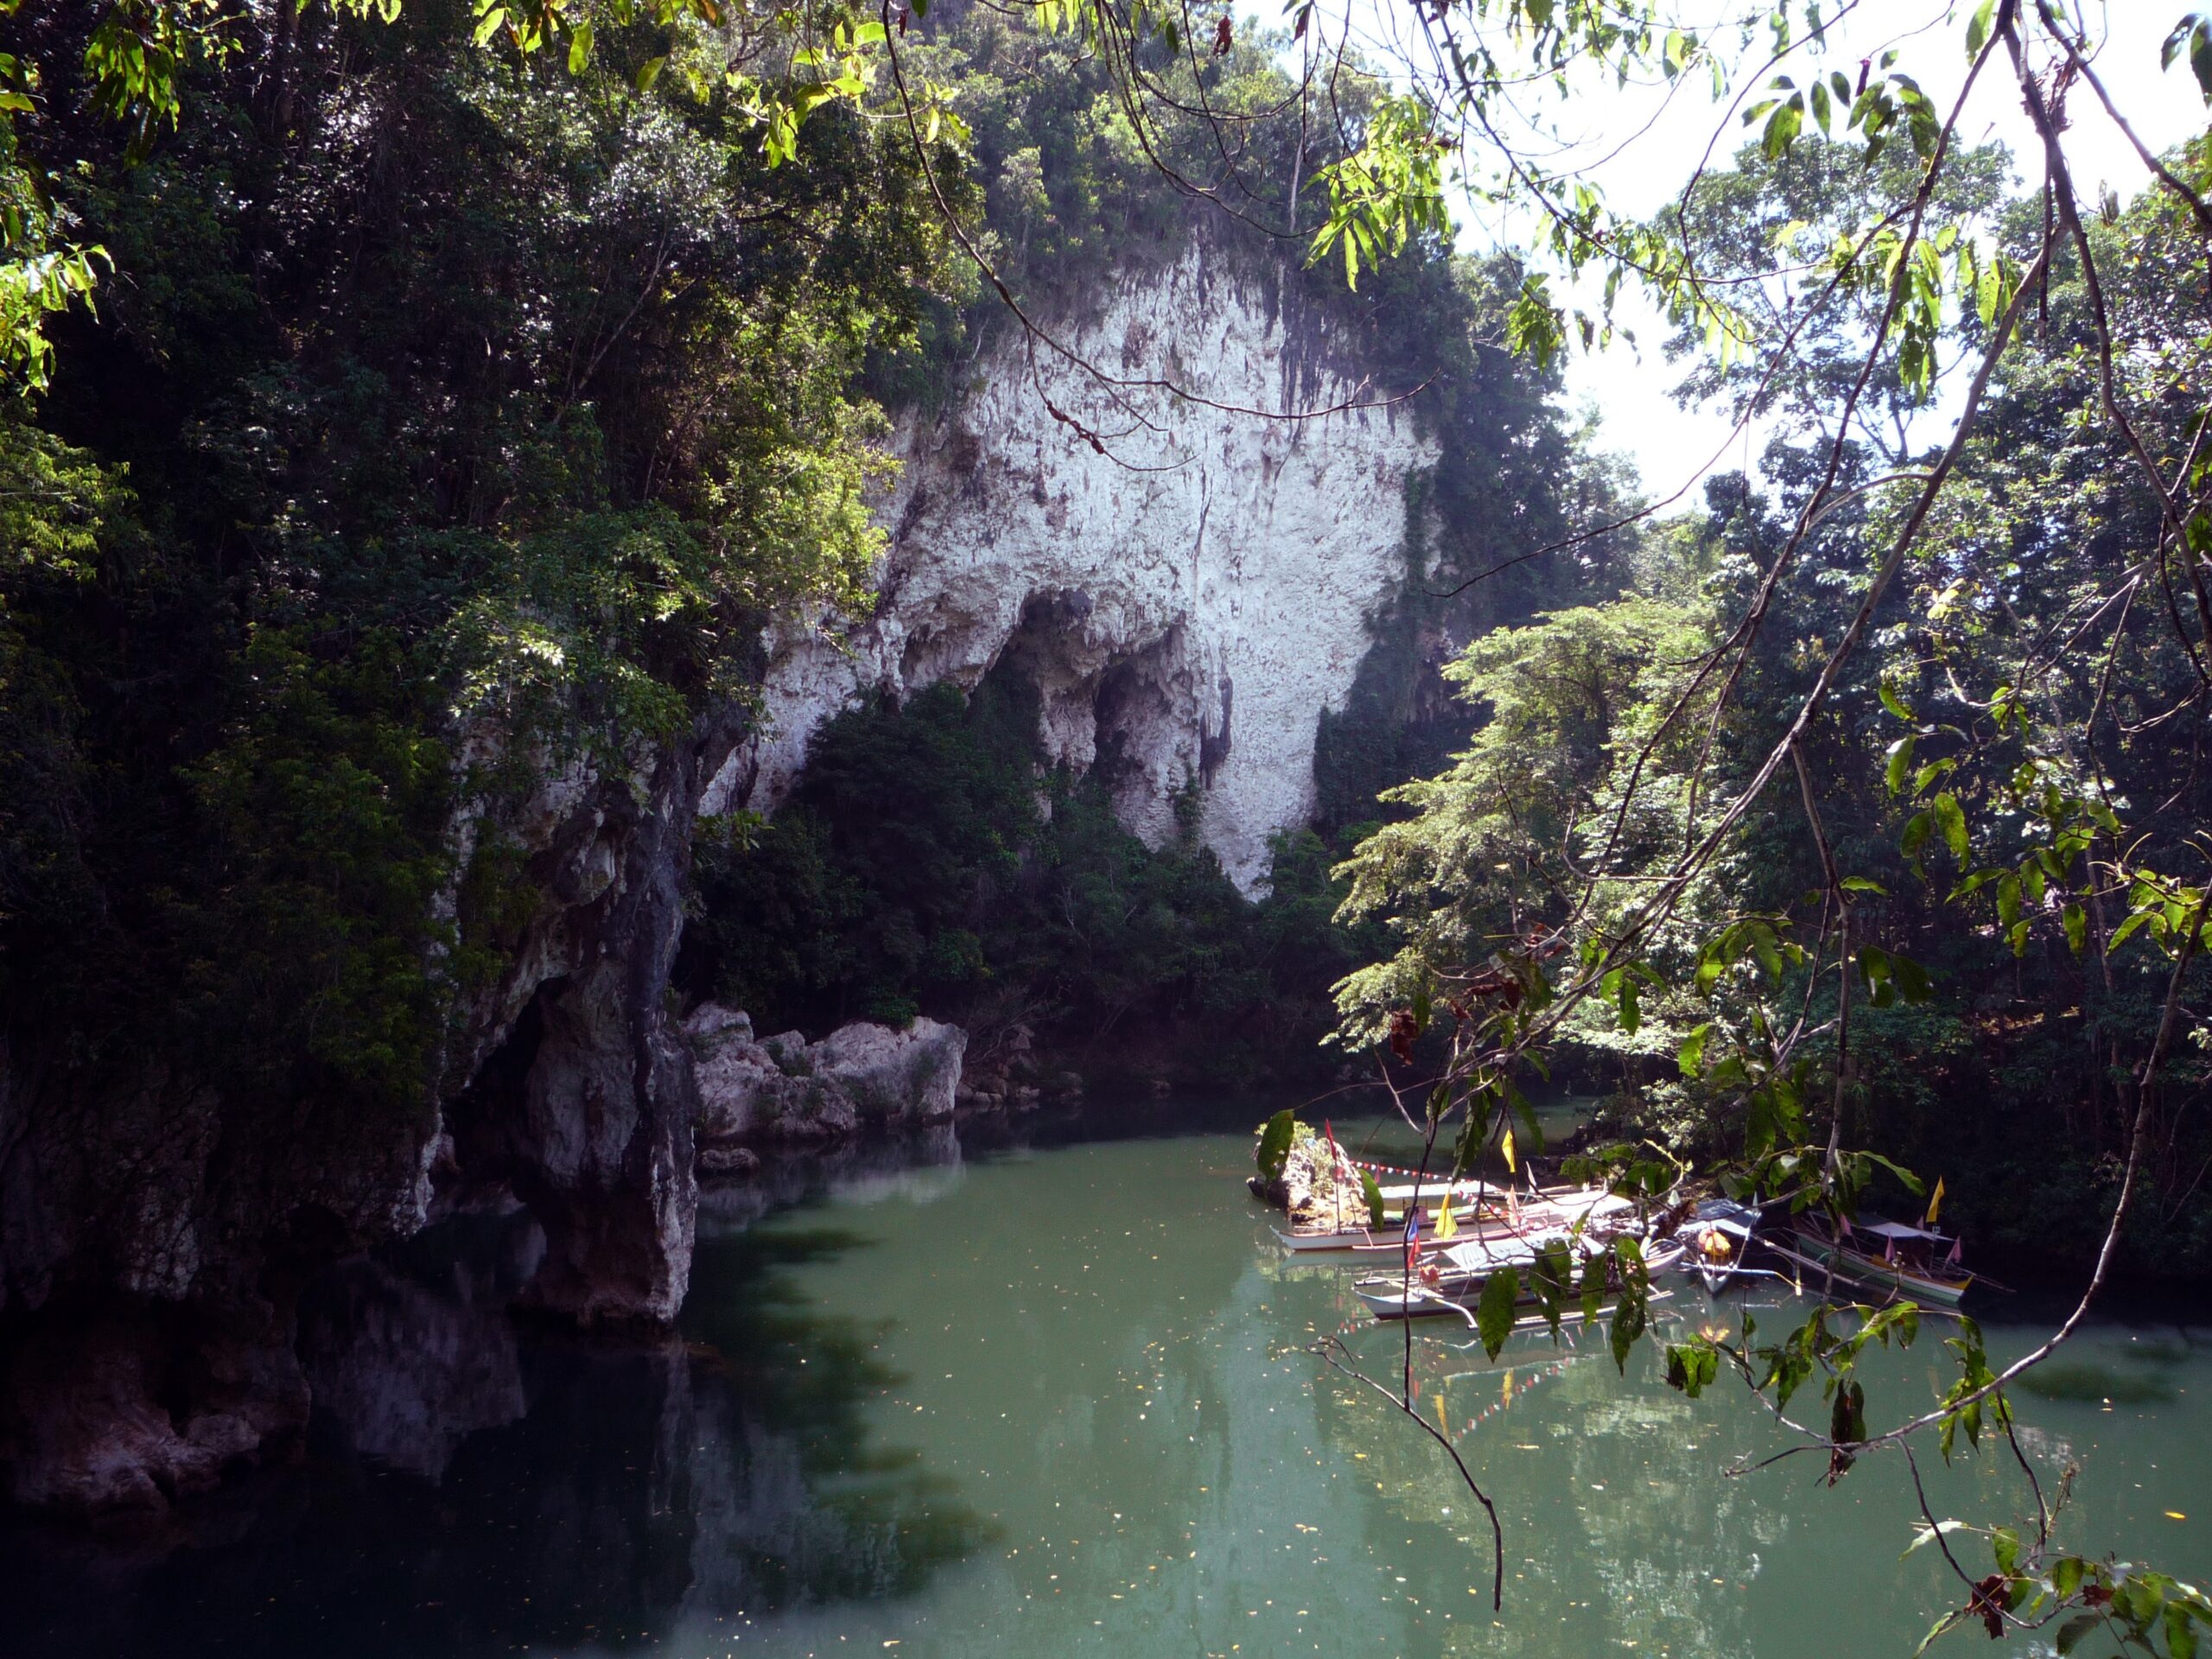 Sohoton Caves and Natural Bridge Park